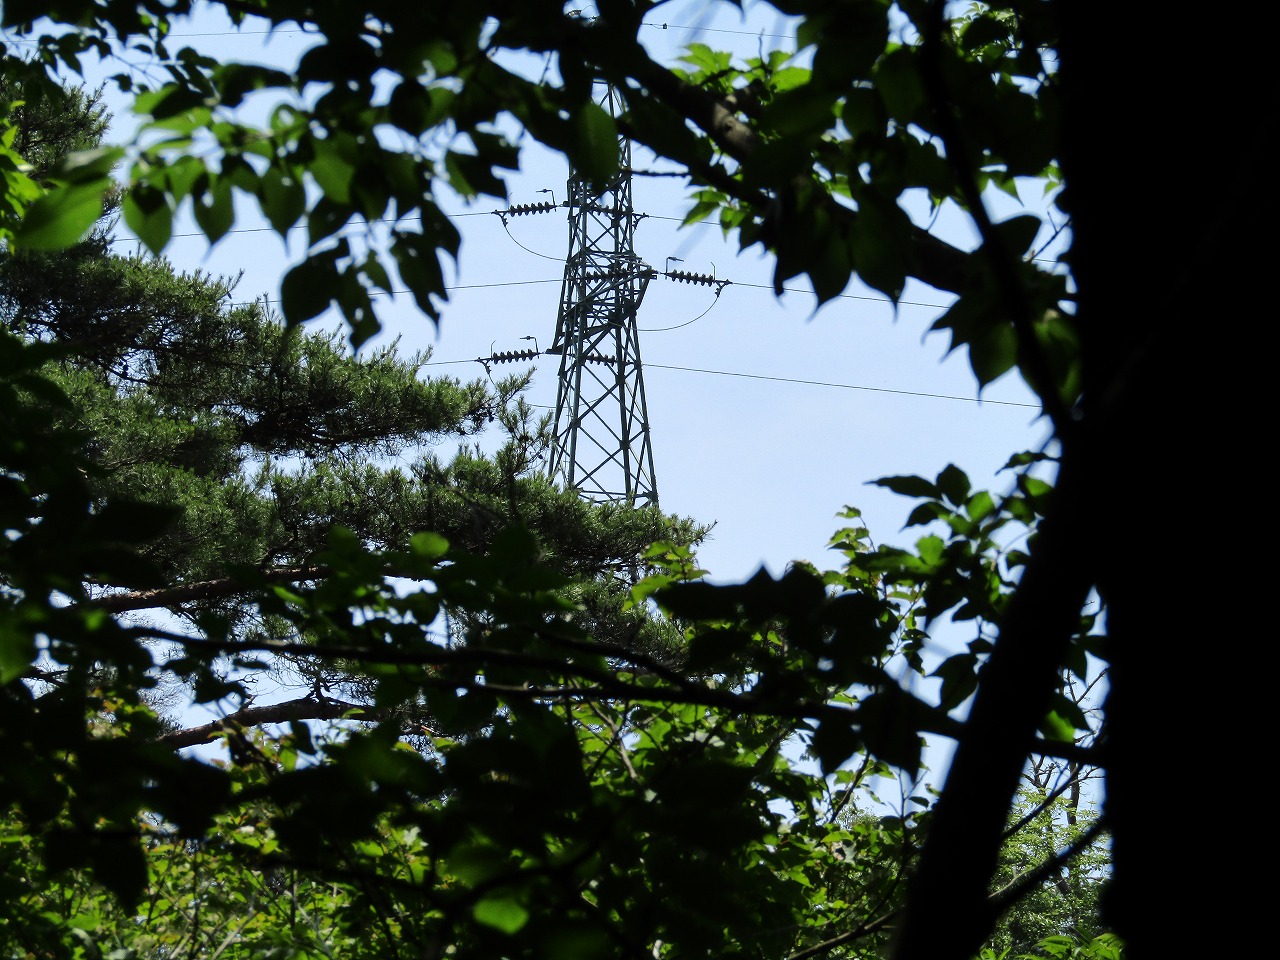 鵜川生産森林組合の看板、N0,57の所から鉄塔